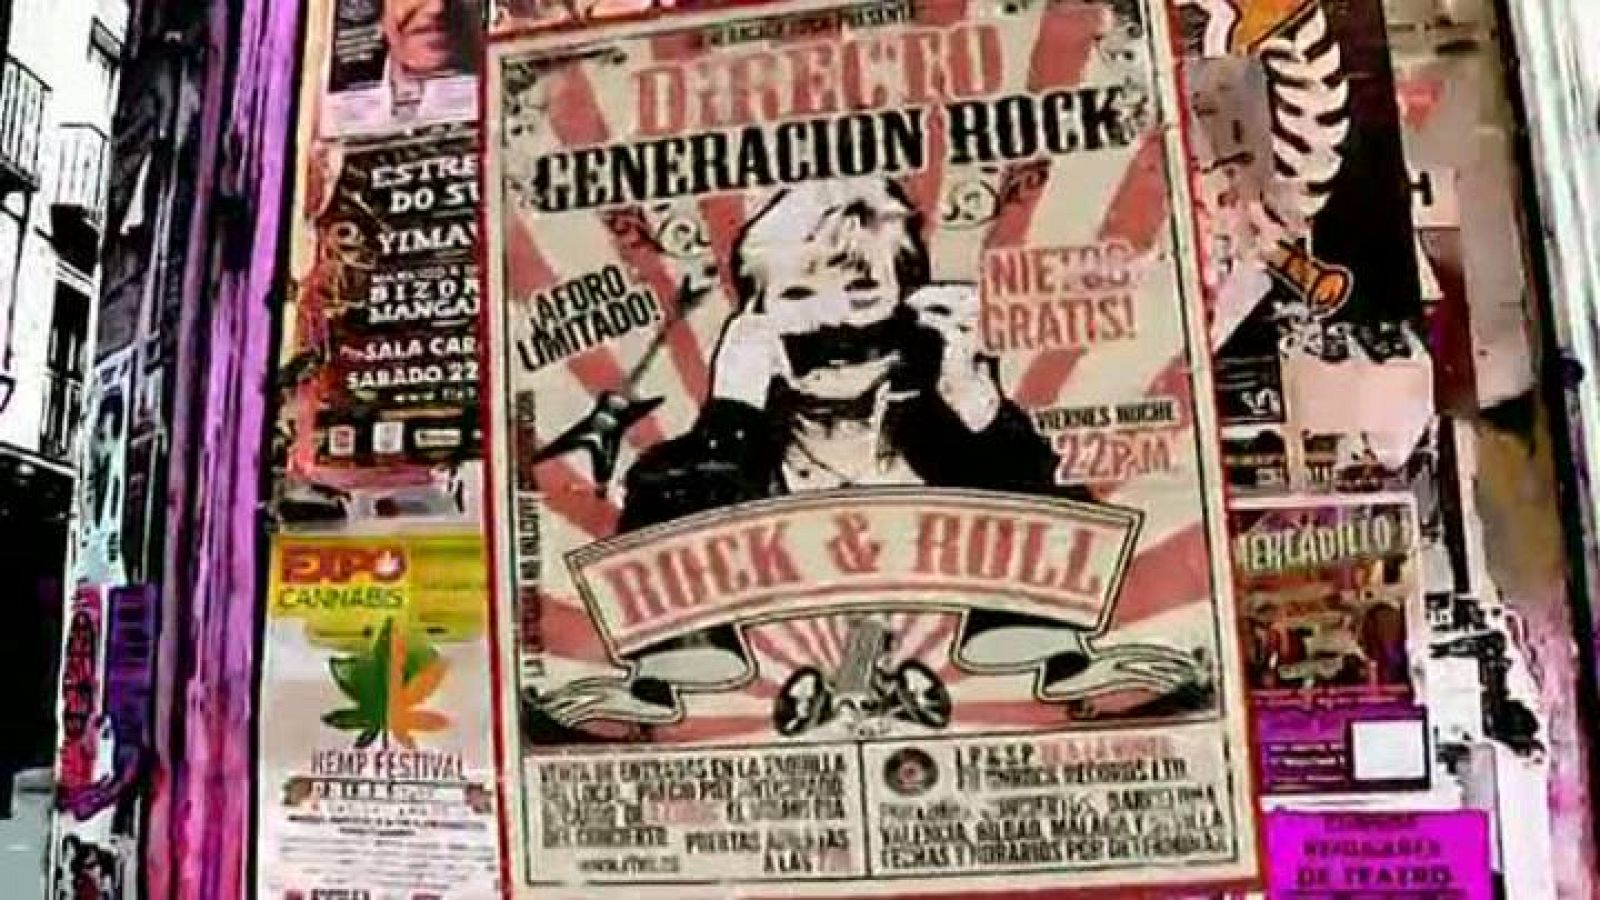 Generación Rock - Vídeo promocional